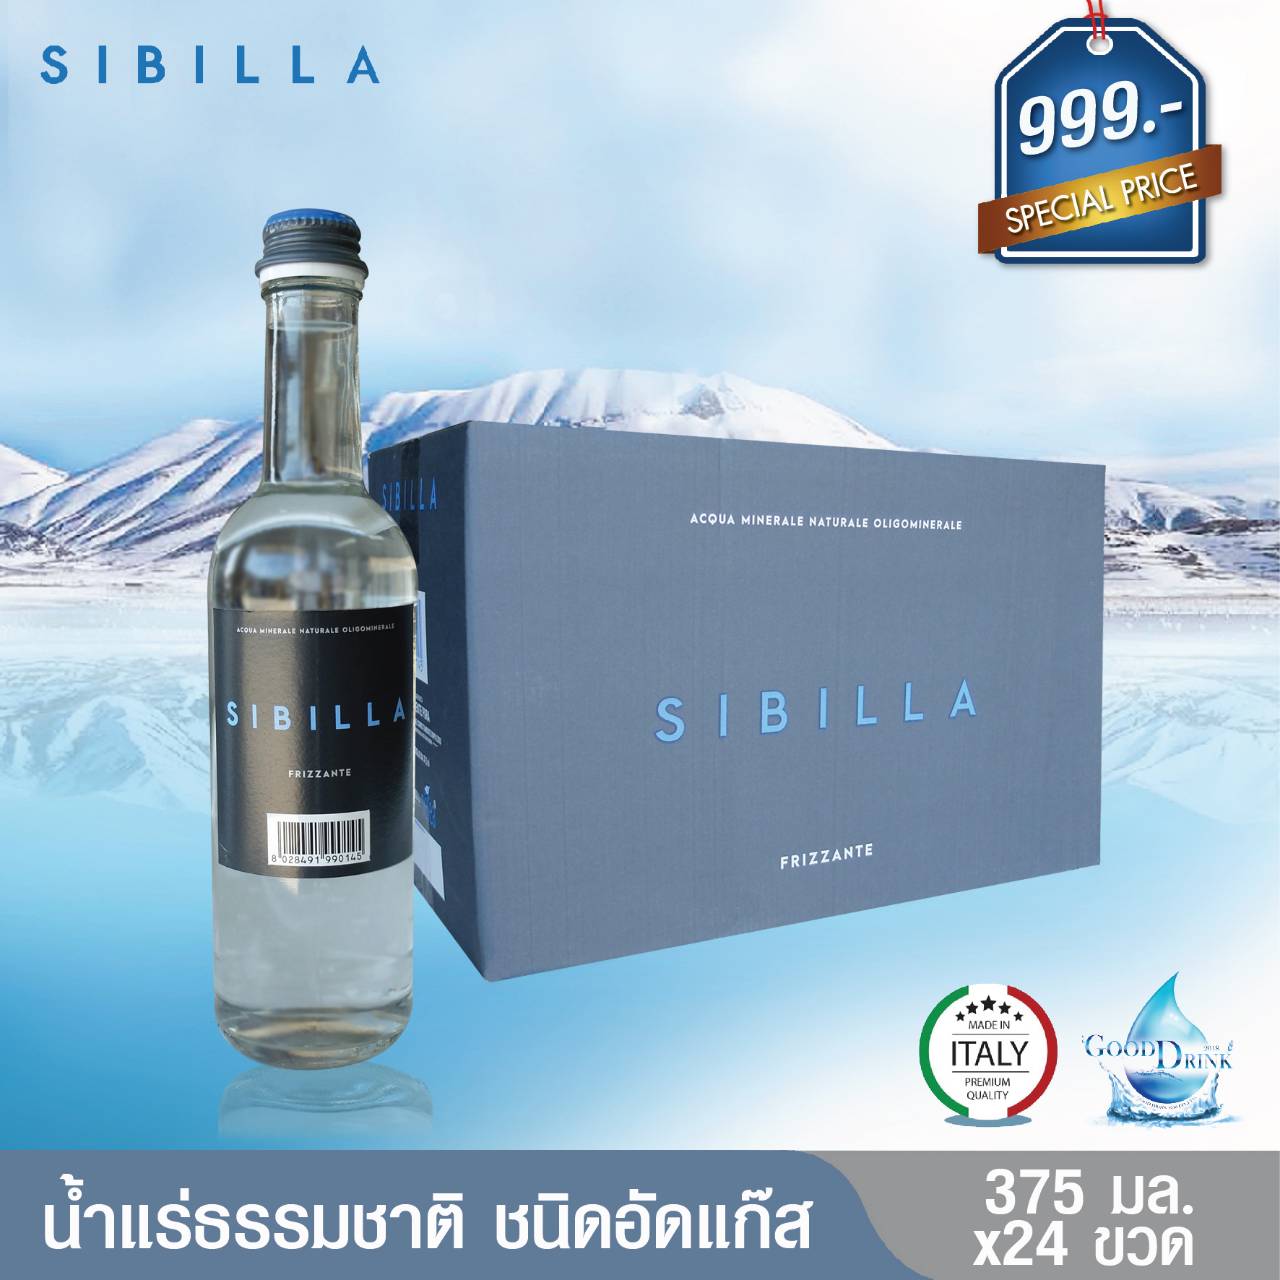 Sibilla Sparkling Mineral Water VAP glass bottle 375 ML. Pack 24 bottles ซิบิลลา น้ำแร่ธรรมชาติชนิดอัดแก๊ส ขวดแก้ว 375 มล. แพค 24 ขวด